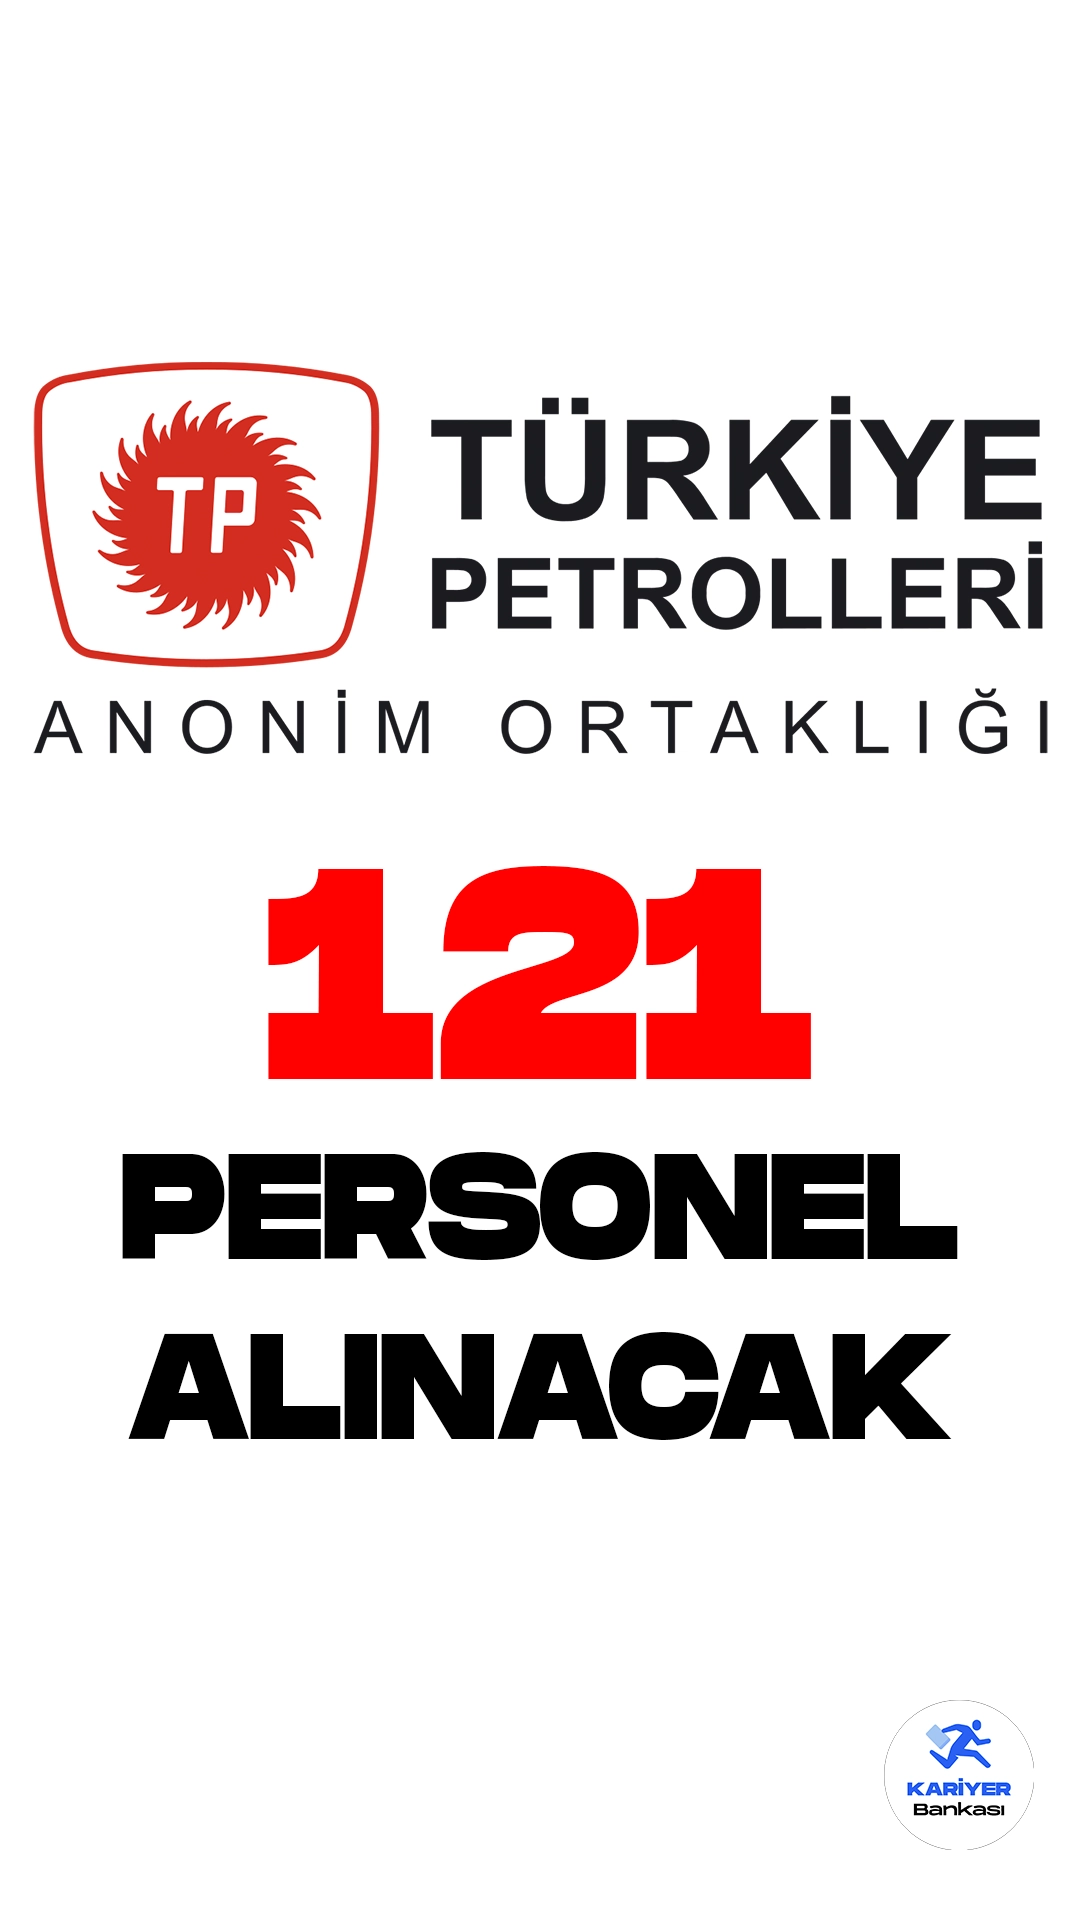 Türkiye Petrolleri Anonim Ortaklığı (TPAO) personel alımı duyurusu yayımlandı. Cumhurbaşkanlığı SBB'de yayımlanan duyuruda, TPAO Merkez ve Taşra Teşkilatlarına lisans mezunlarından 121 personel alımı yapılacağı aktarılırken, başvuruların 1 Ağustos itibarıyla alınacağı kaydedildi.